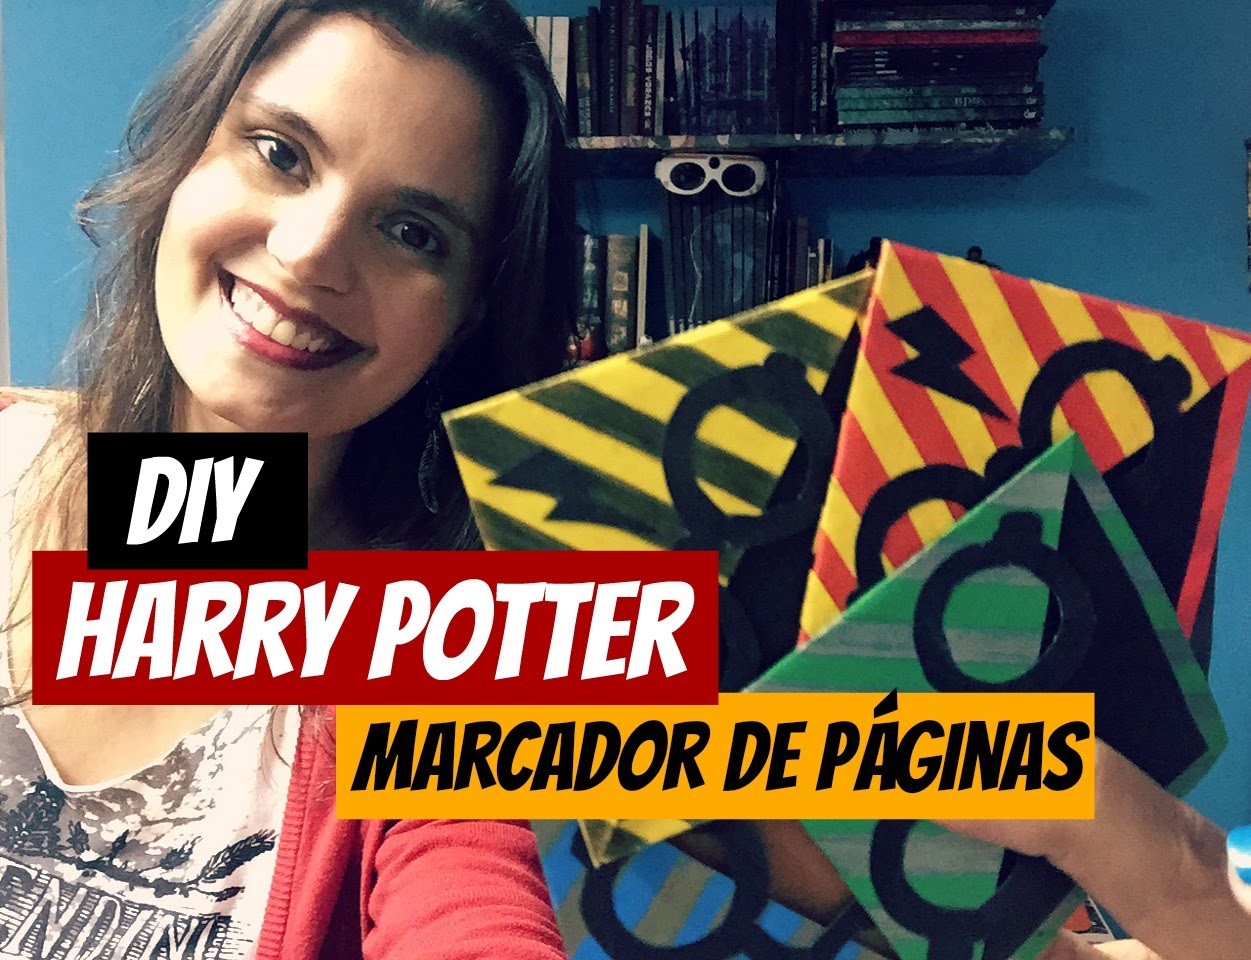 DIY: Harry Potter - Marcador de páginas (Bookmark)